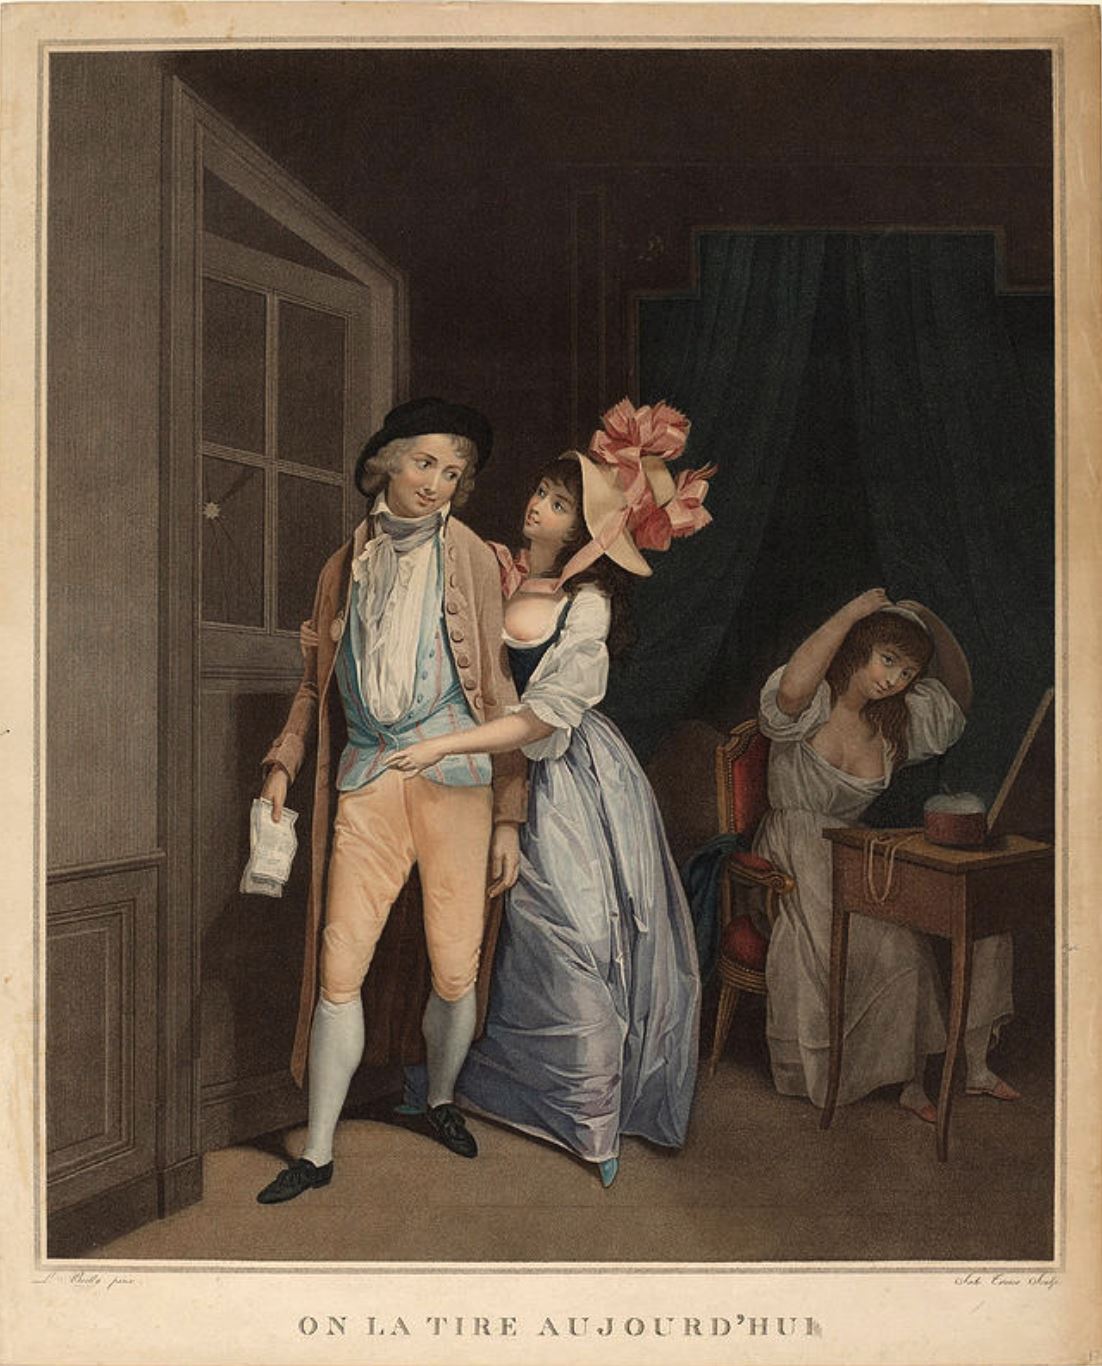 Boilly 1794, On la tire aujourd’hui gravure de Tresca